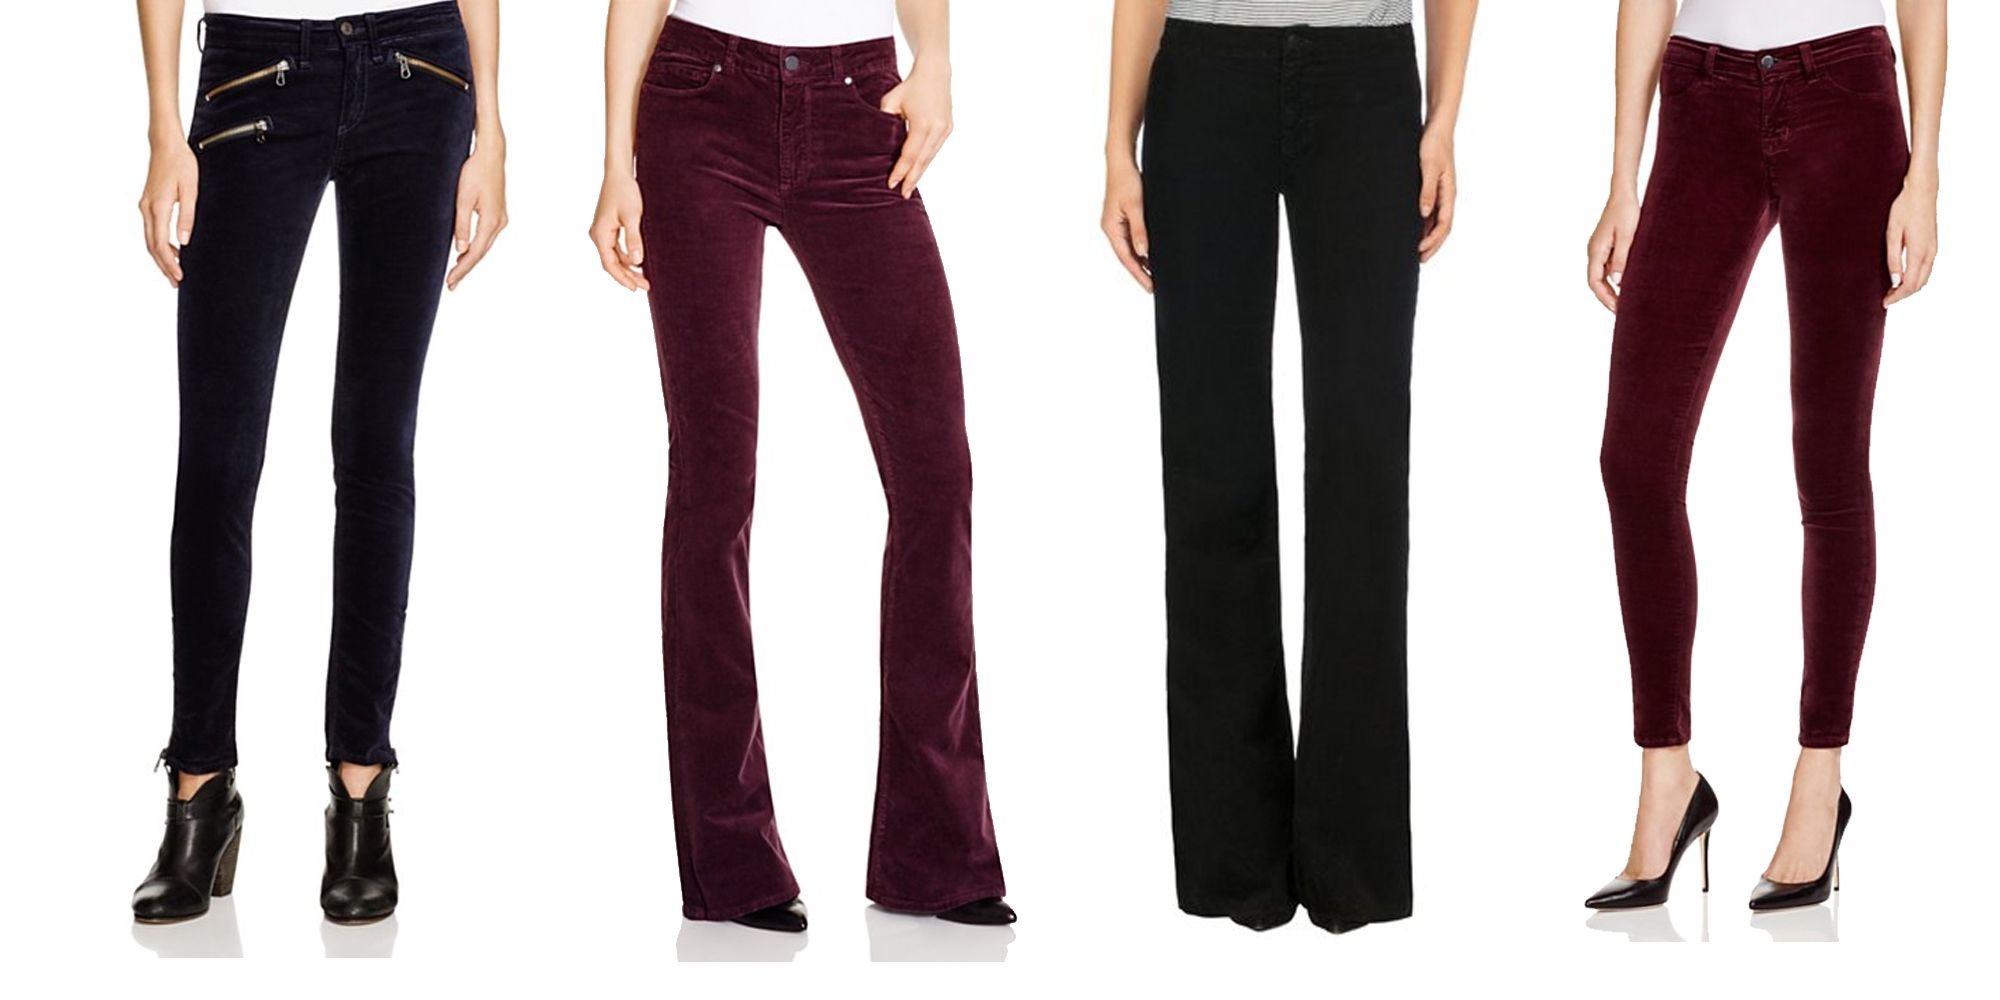 J Brand 815 Mid Rise Super Skinny Blue Jeans Velvet Pants Womens Size 24   eBay